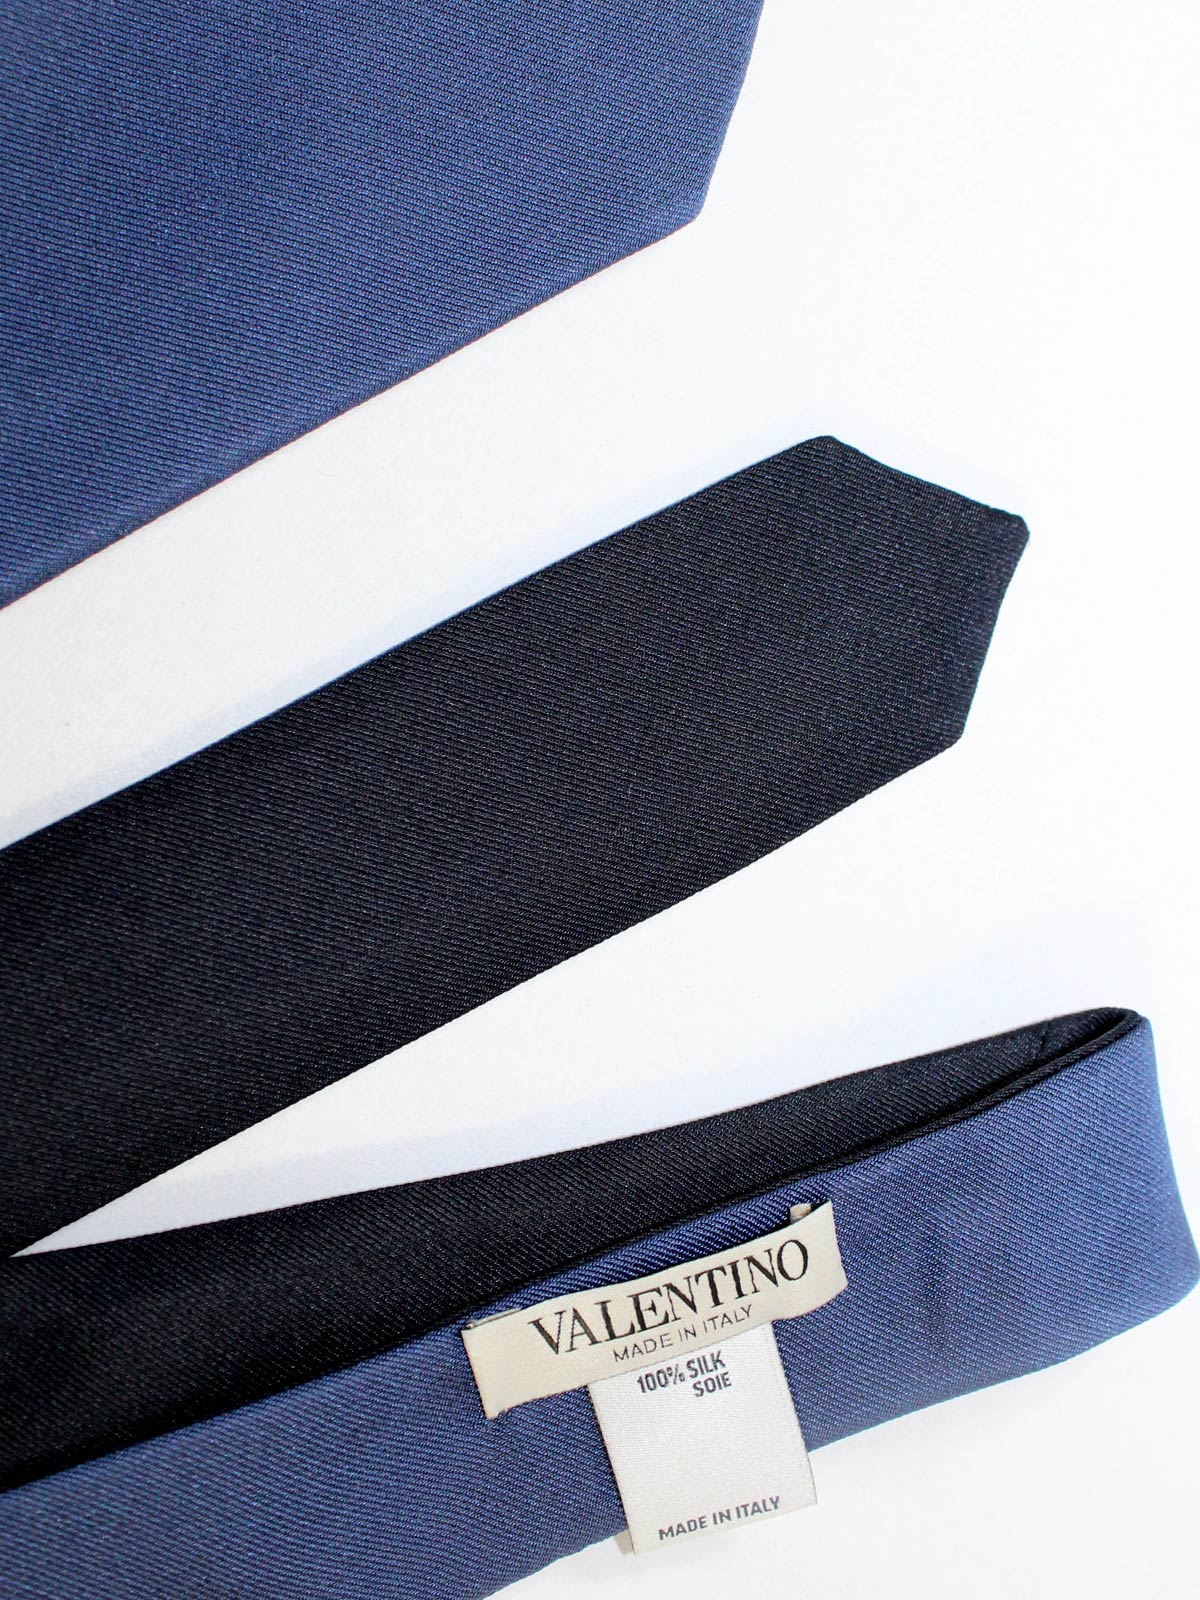 Valentino Skinny Tie - Dark Navy Solid Design Tie Deals